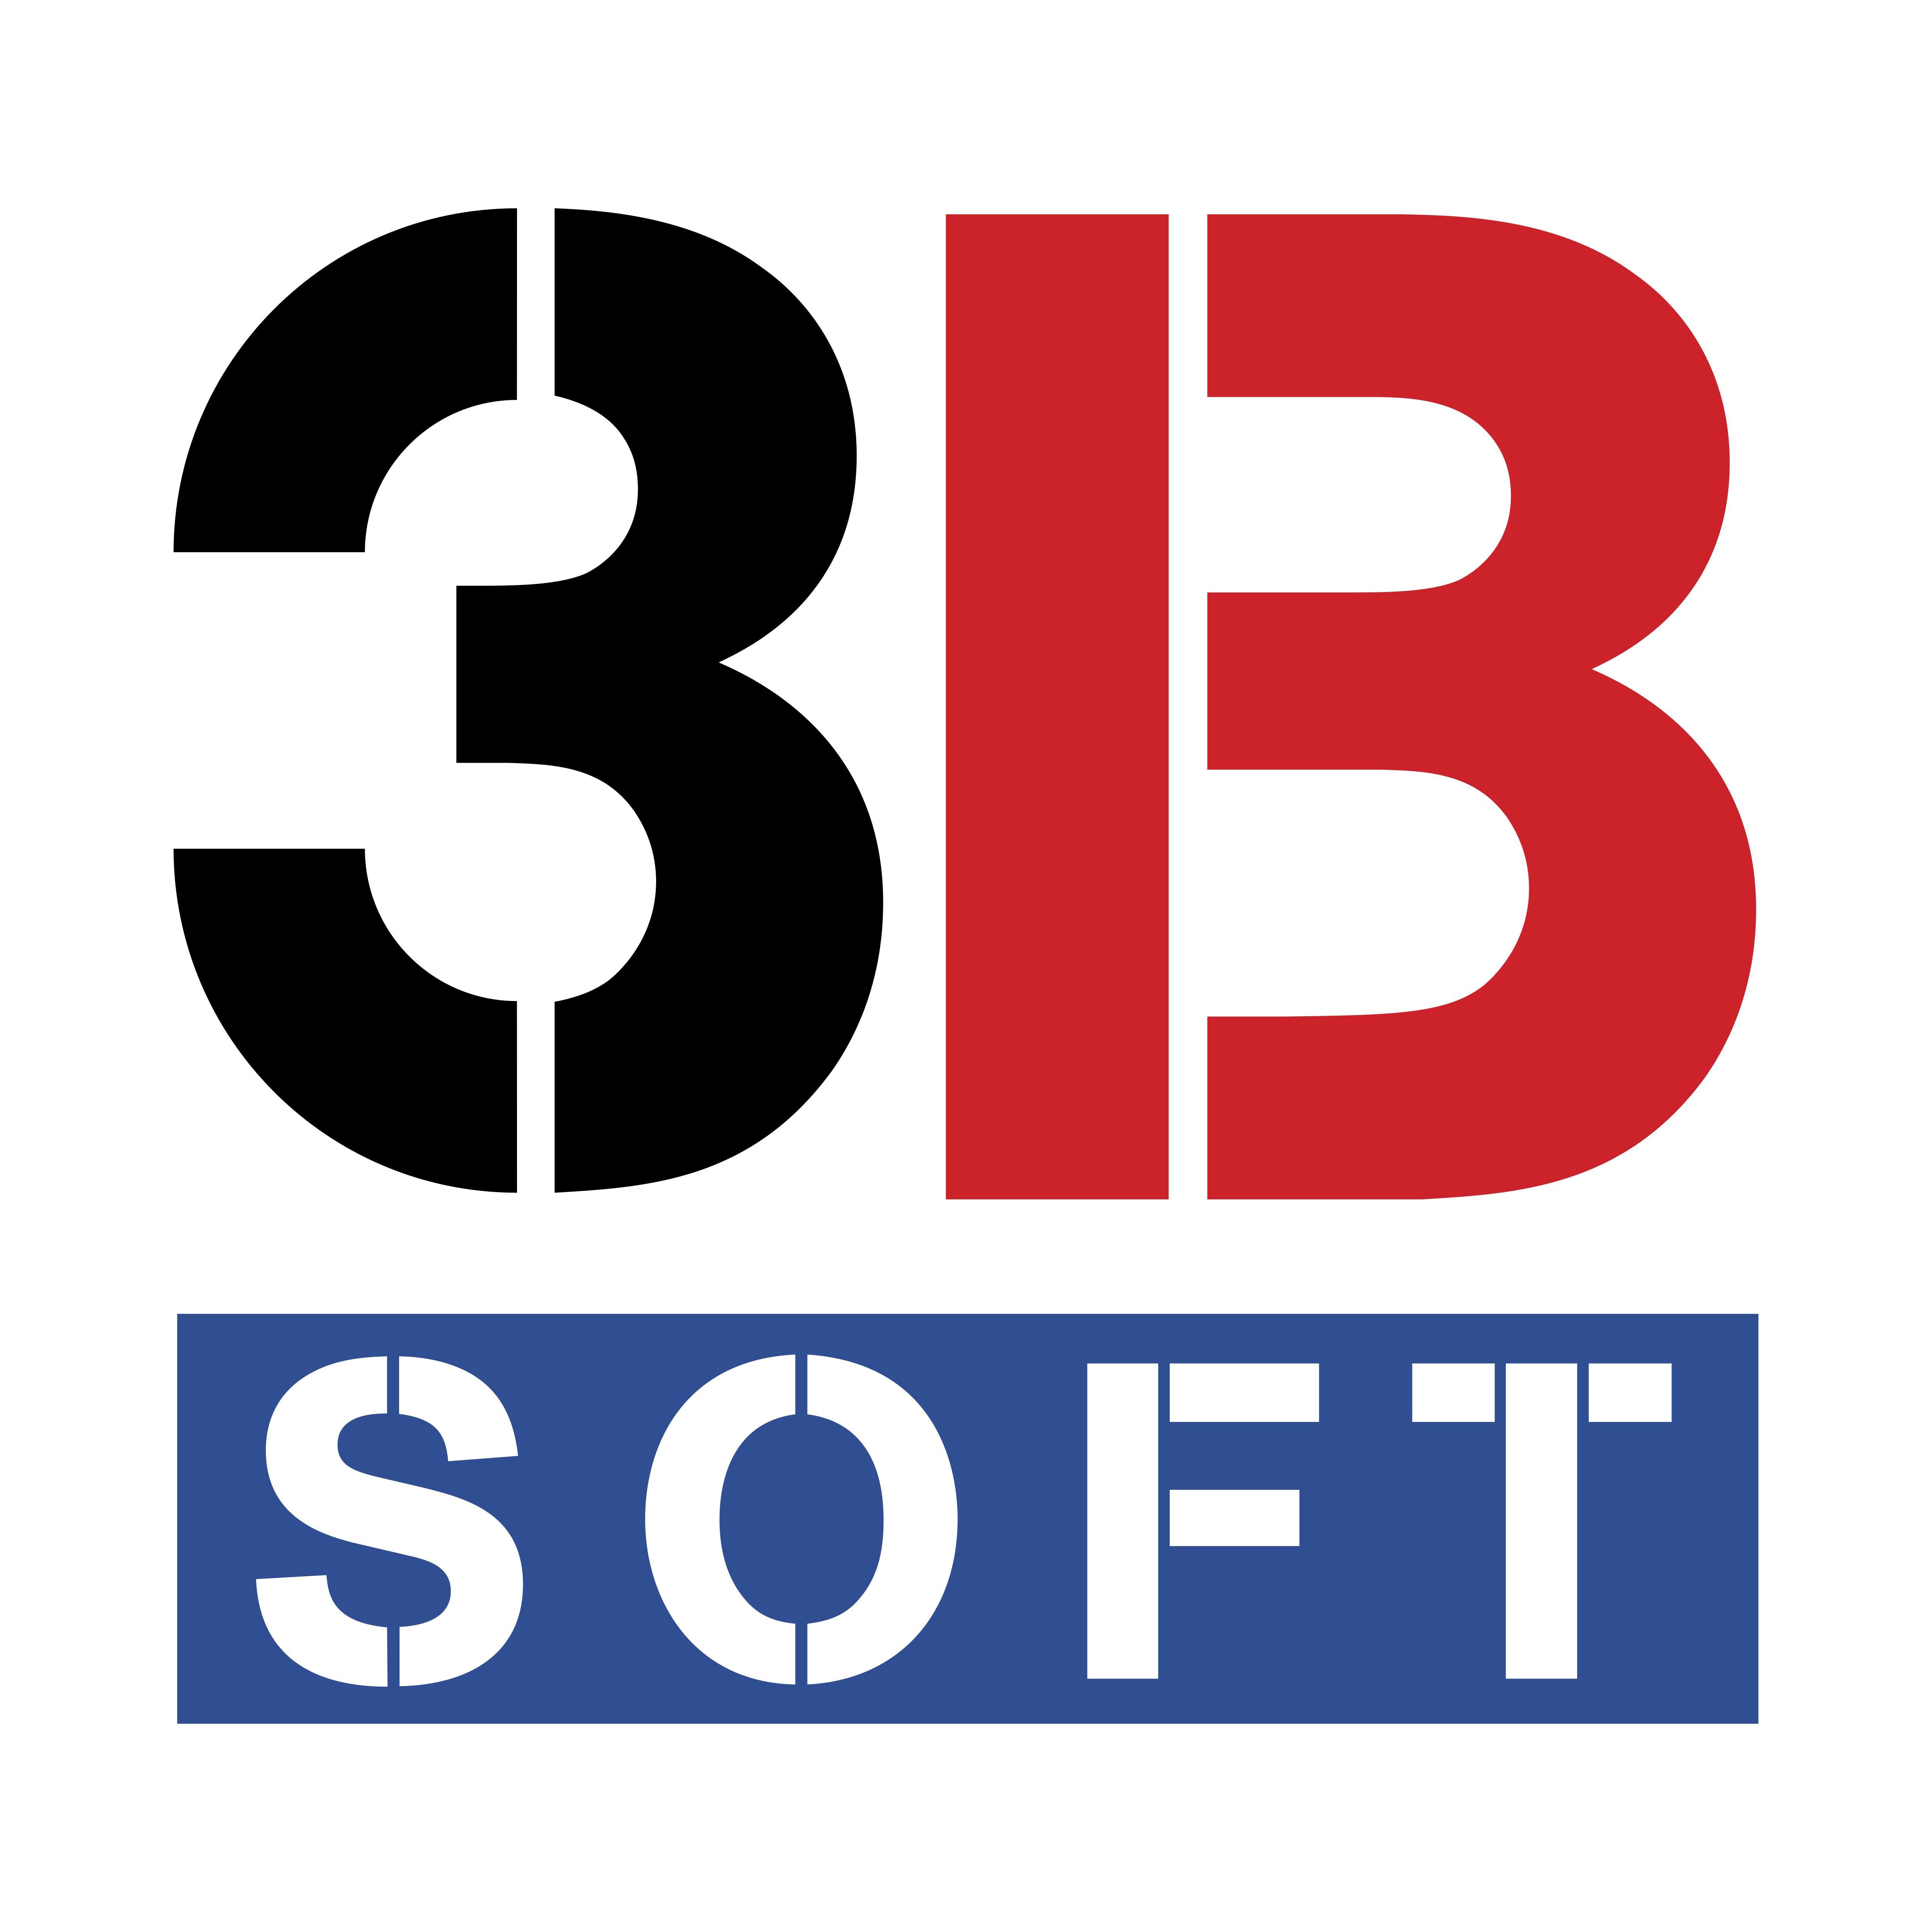 3 B Logo - 3B Soft – Logos Download